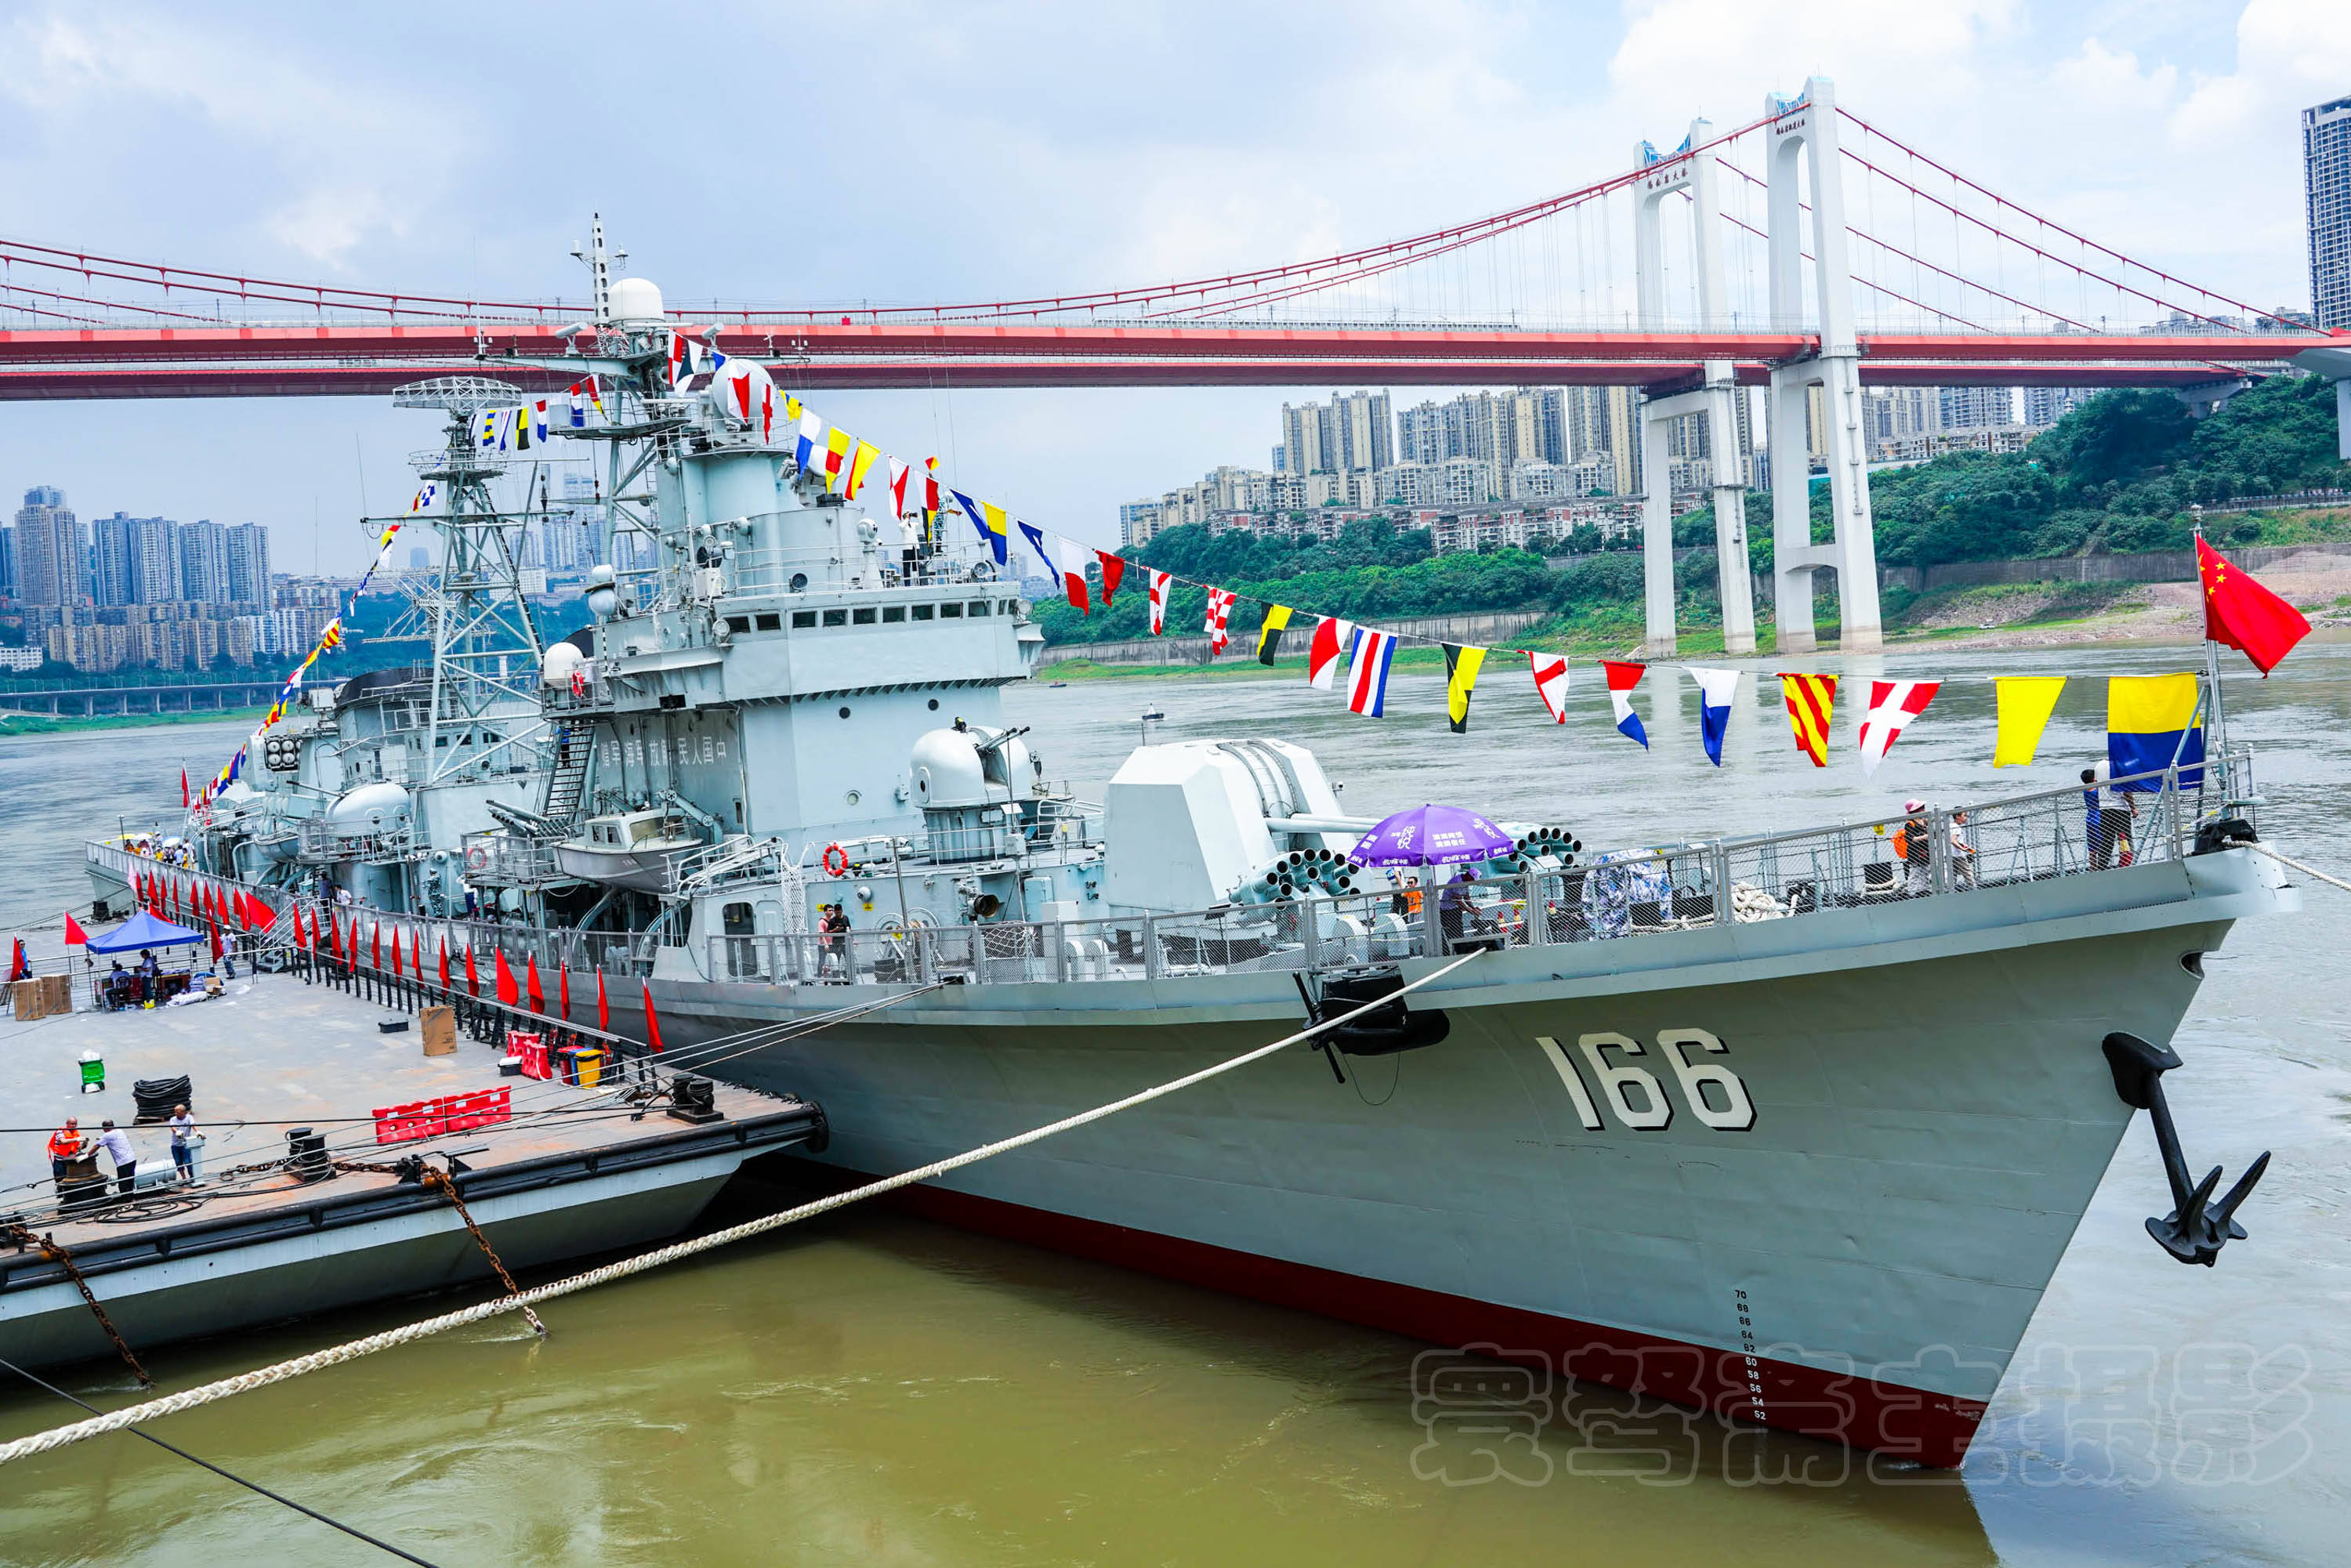 原创海军退役的166舰停泊在重庆长江边成了重庆建川博物馆的历史陈列